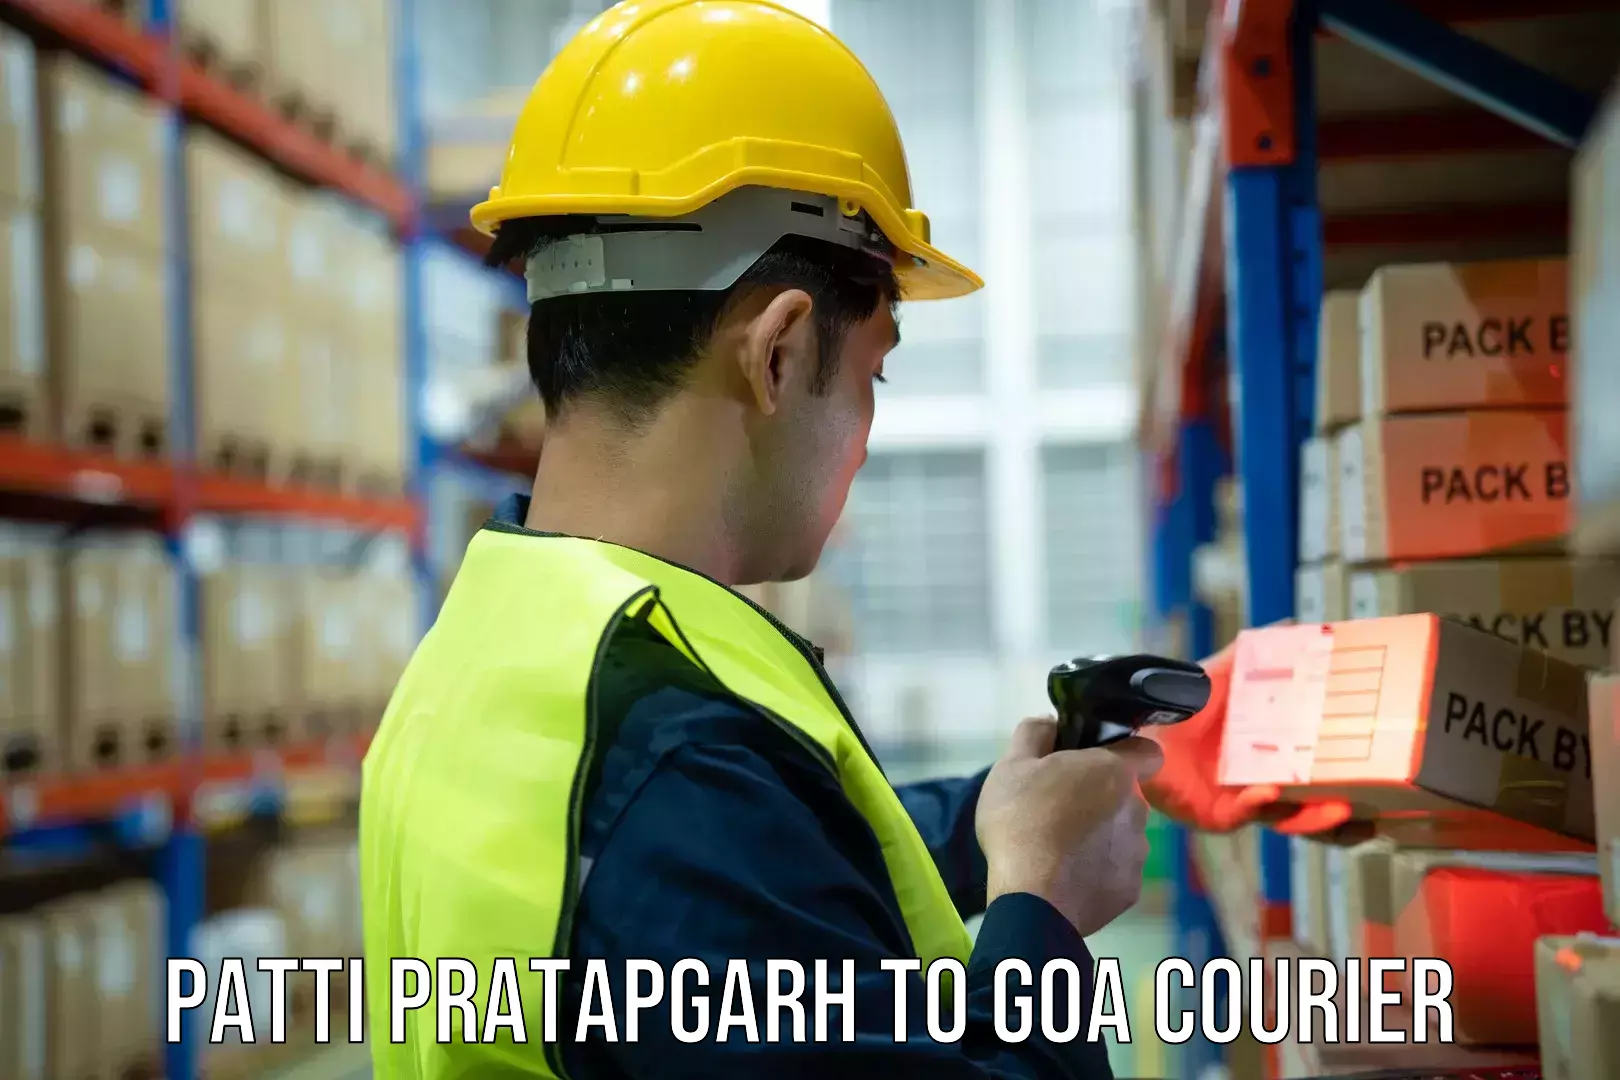 Express delivery network Patti Pratapgarh to South Goa